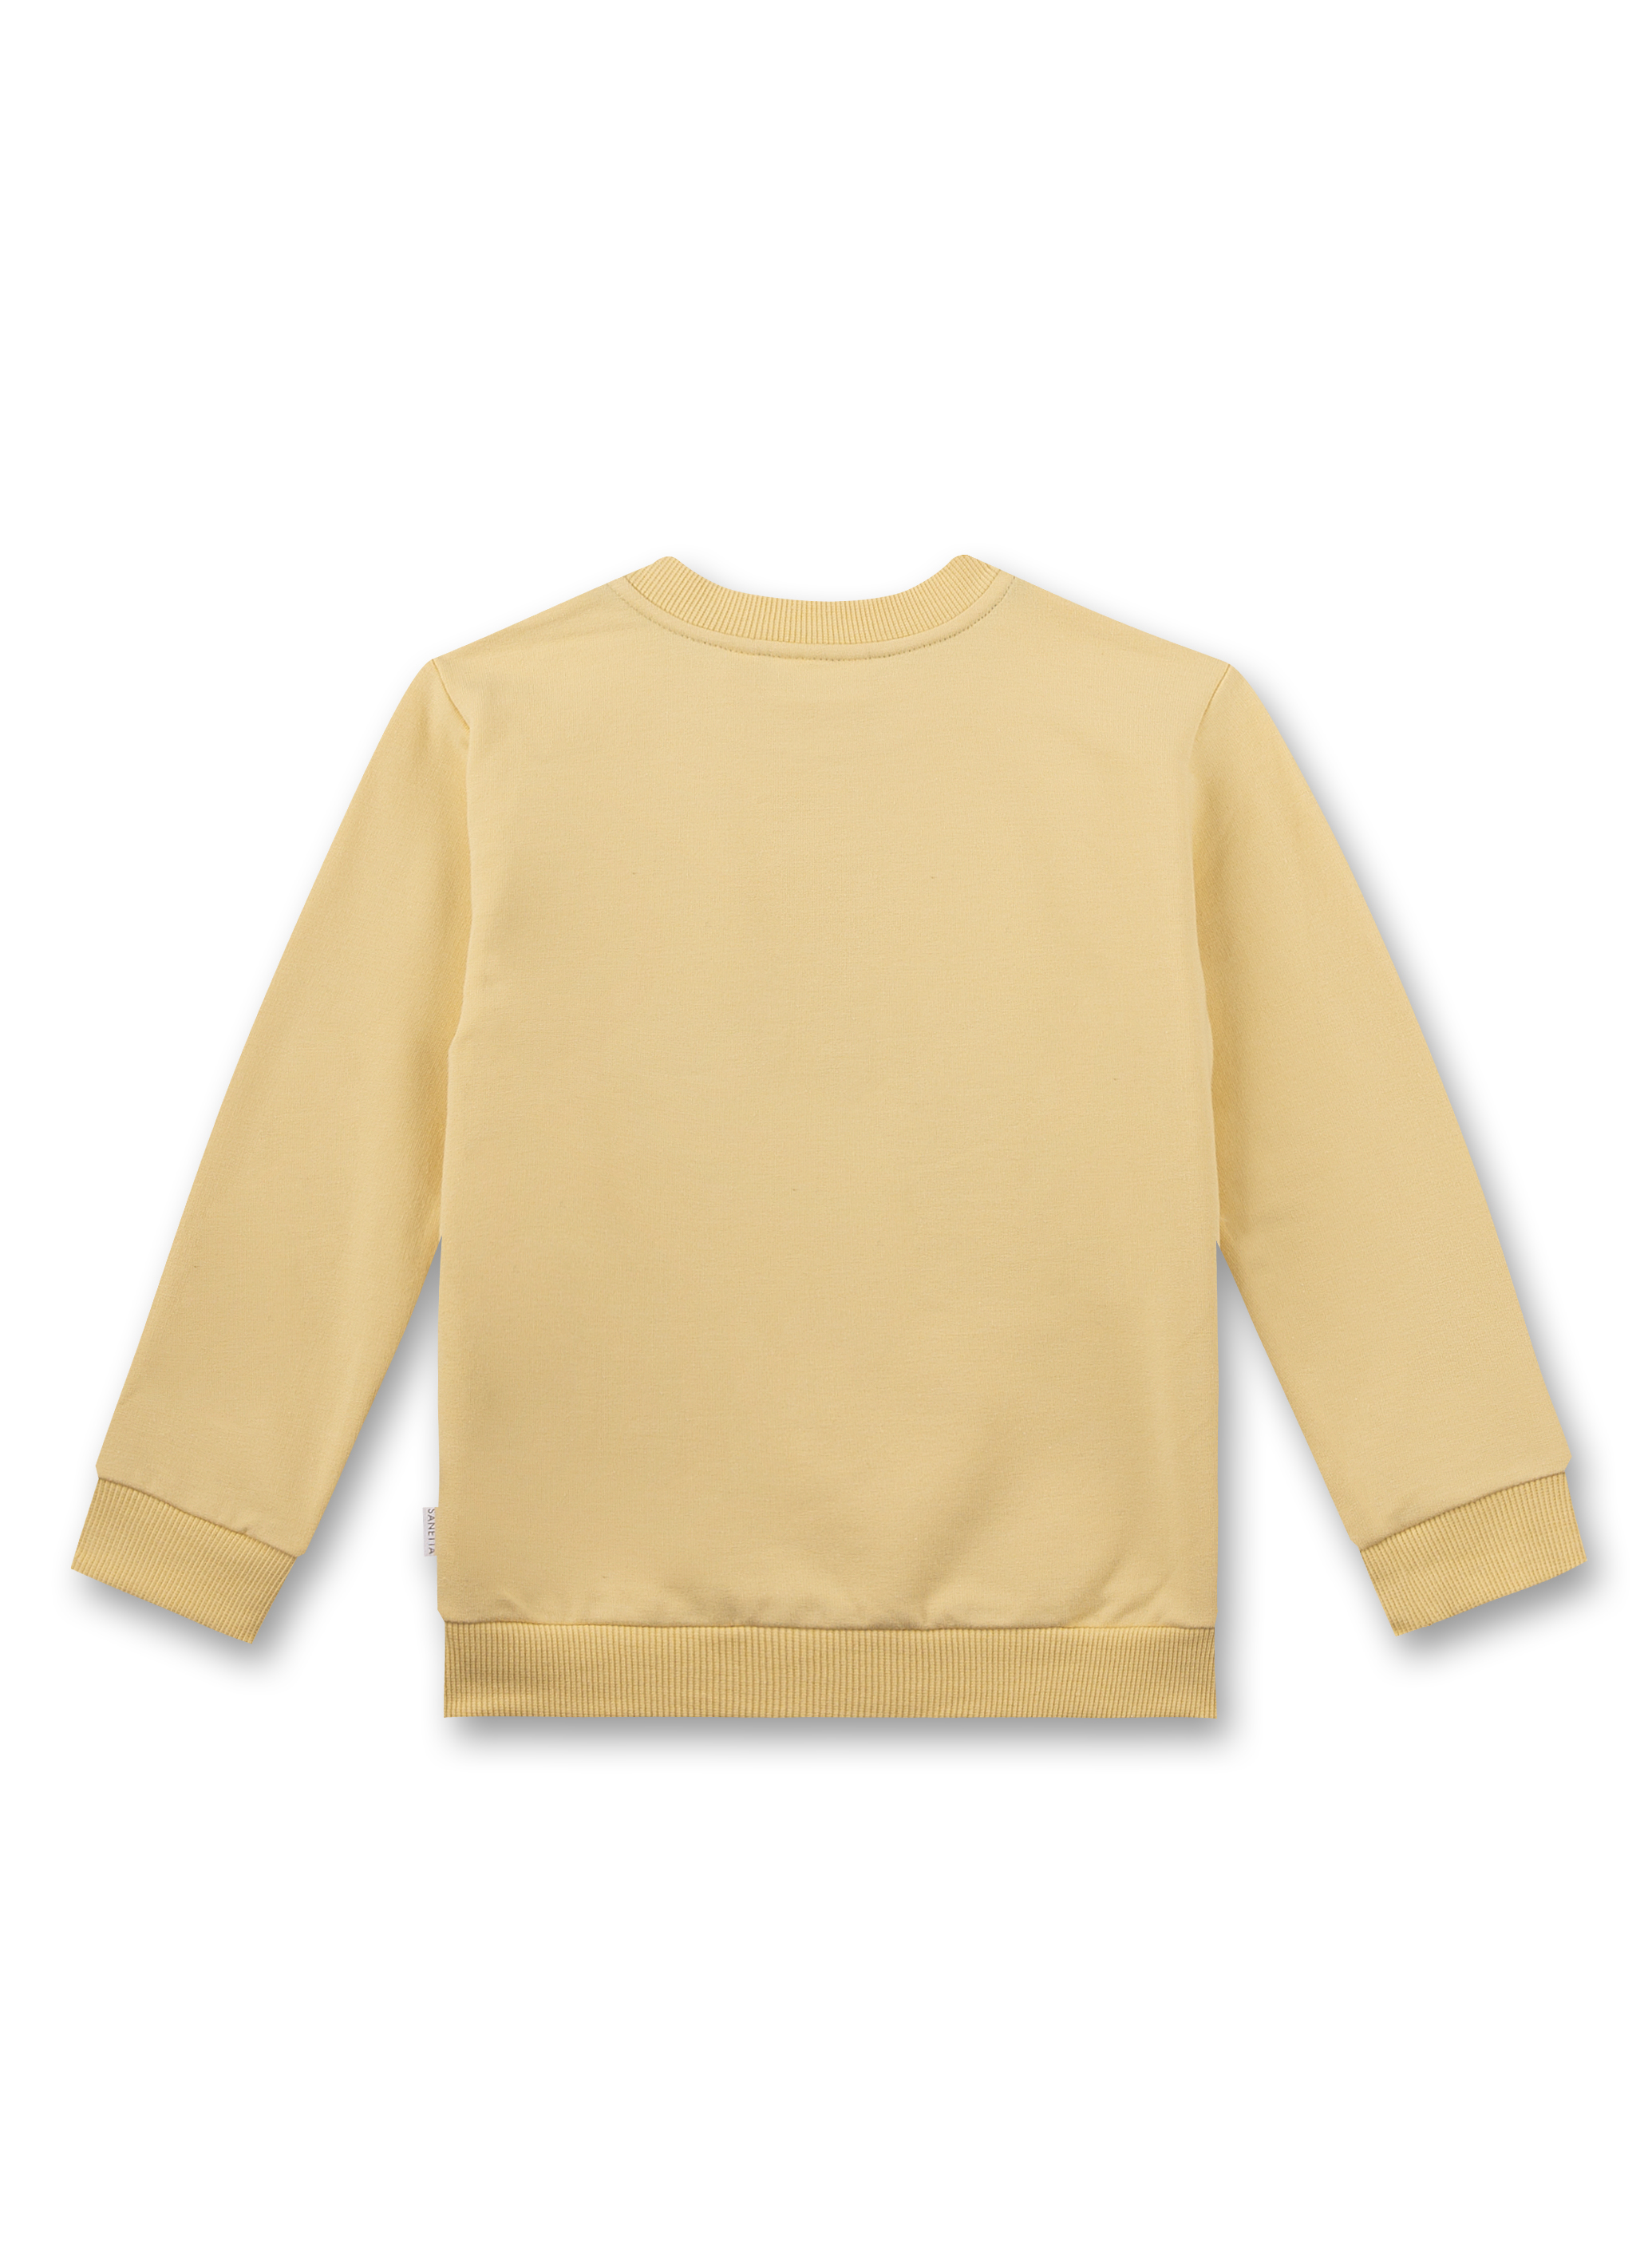 Jungen-Sweatshirt Gelb